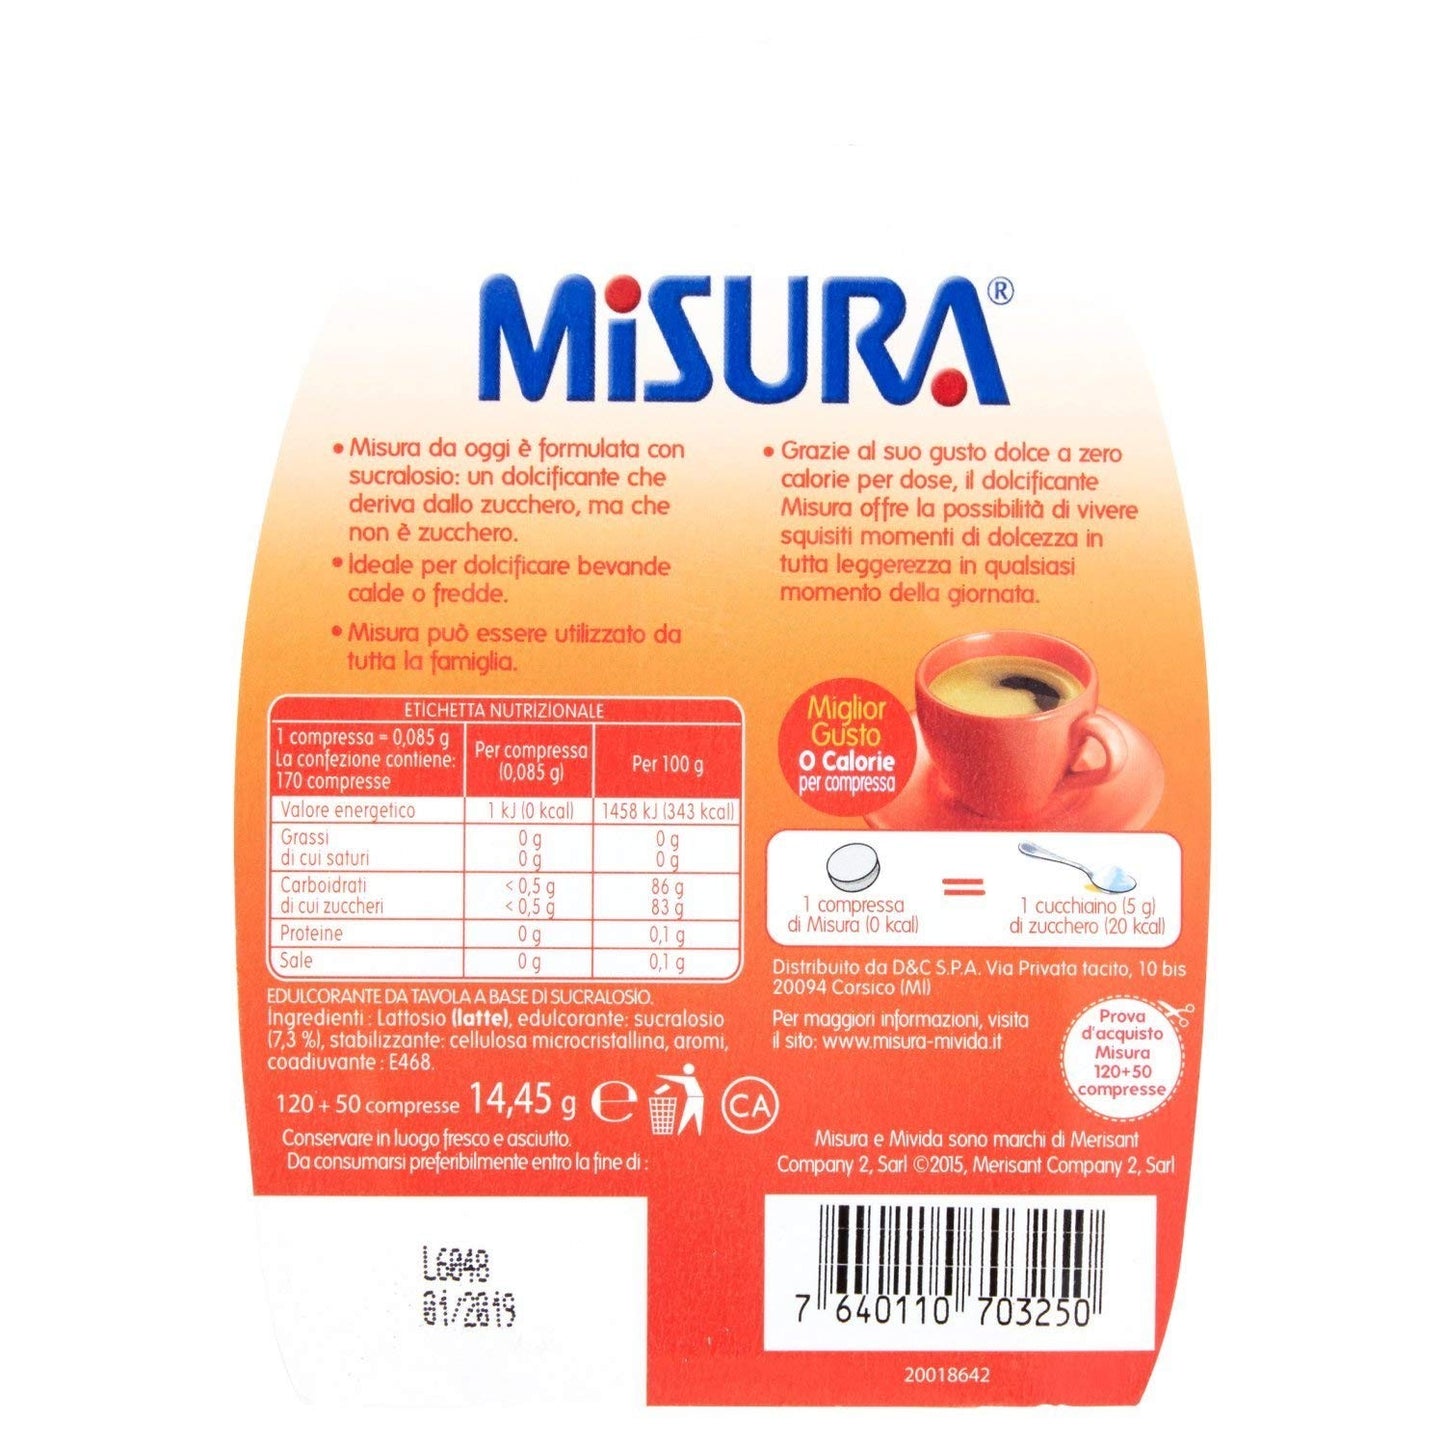 Misura - Edulcorante Da Tavola, Miglior Gusto, 0 Calorie - 150 Compresse1